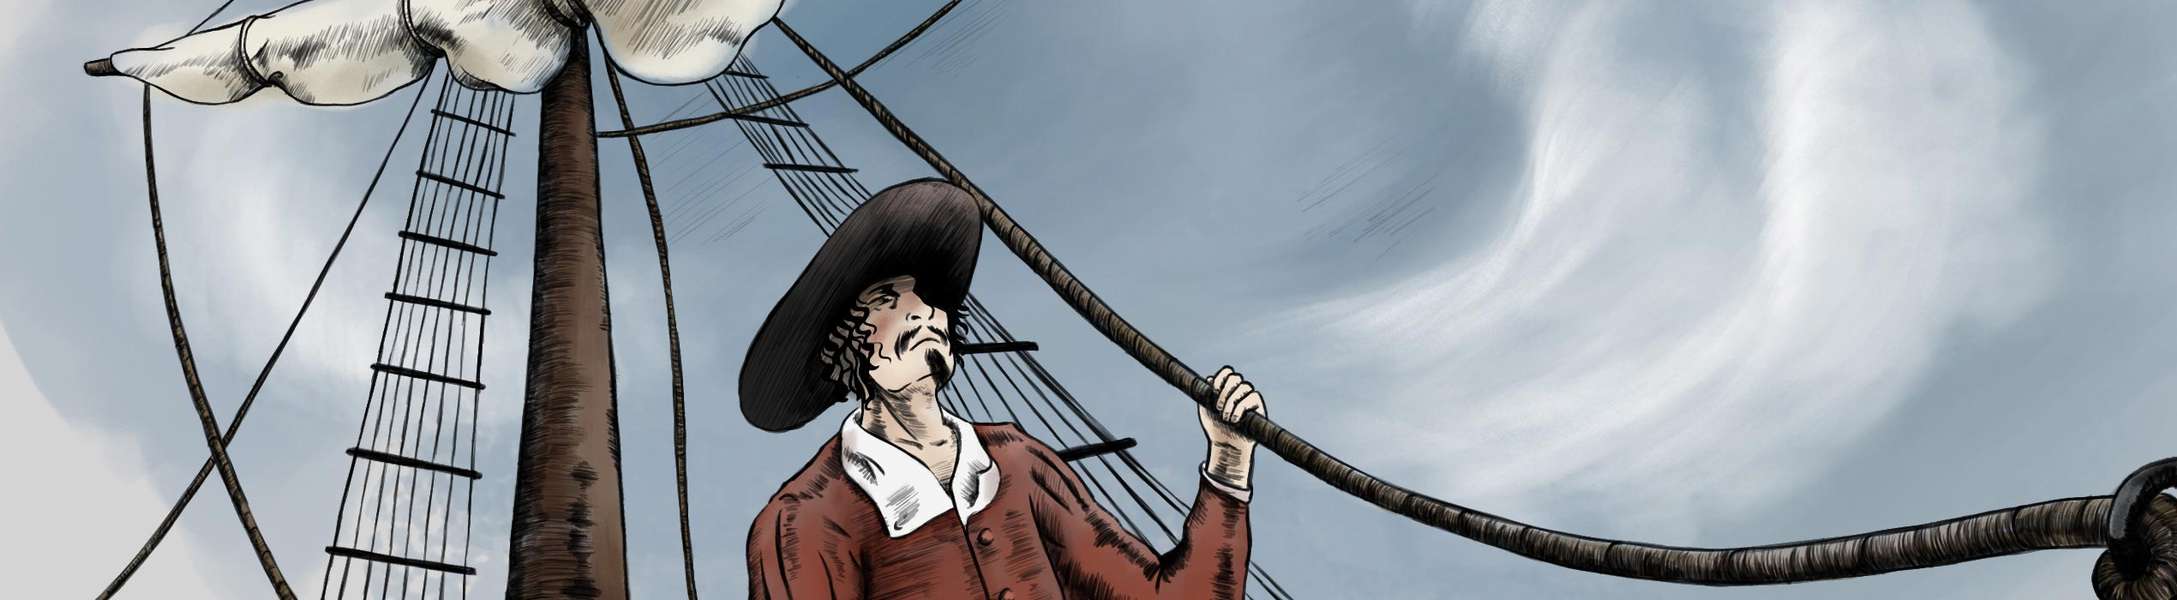 Una escena de un barco pirata que trae recuerdos de Jean Lafitte y por qué su fantasma puede acechar a Galveston.